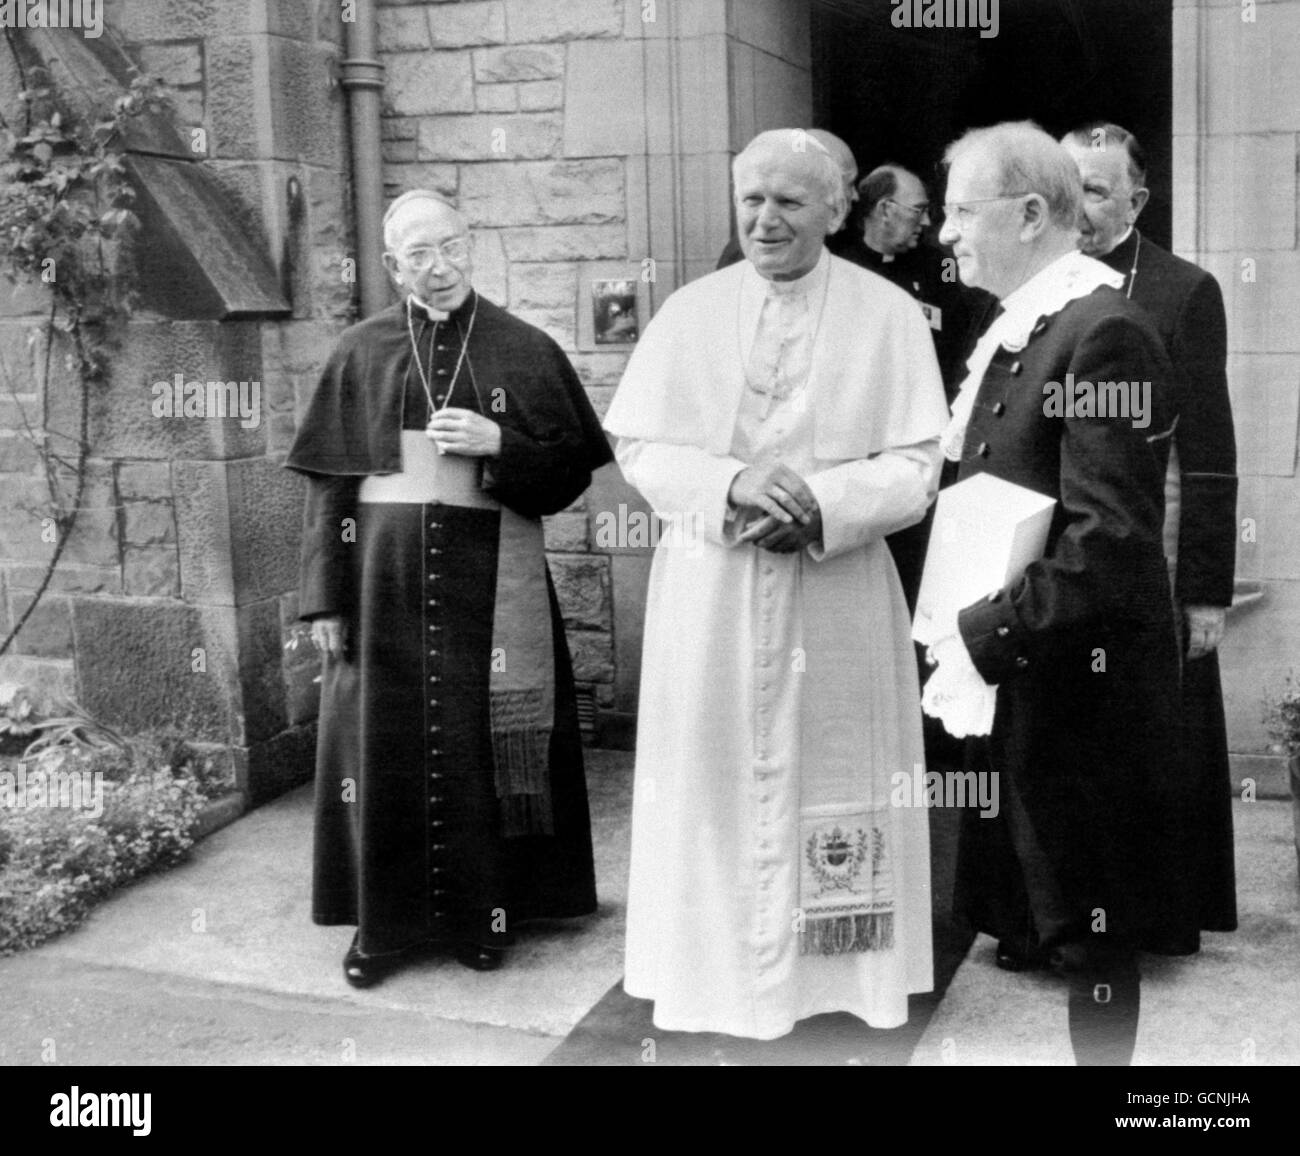 Le Pape Jean-Paul II (au centre) avec le modérateur de l'Assemblée générale de l'Église d'Écosse, le Révérend droit, le Professeur John McIntyre (à droite), après leur rencontre à la maison d'Édimbourg du chef des catholiques romains écossais, le Cardinal Gray, ce matin. Banque D'Images